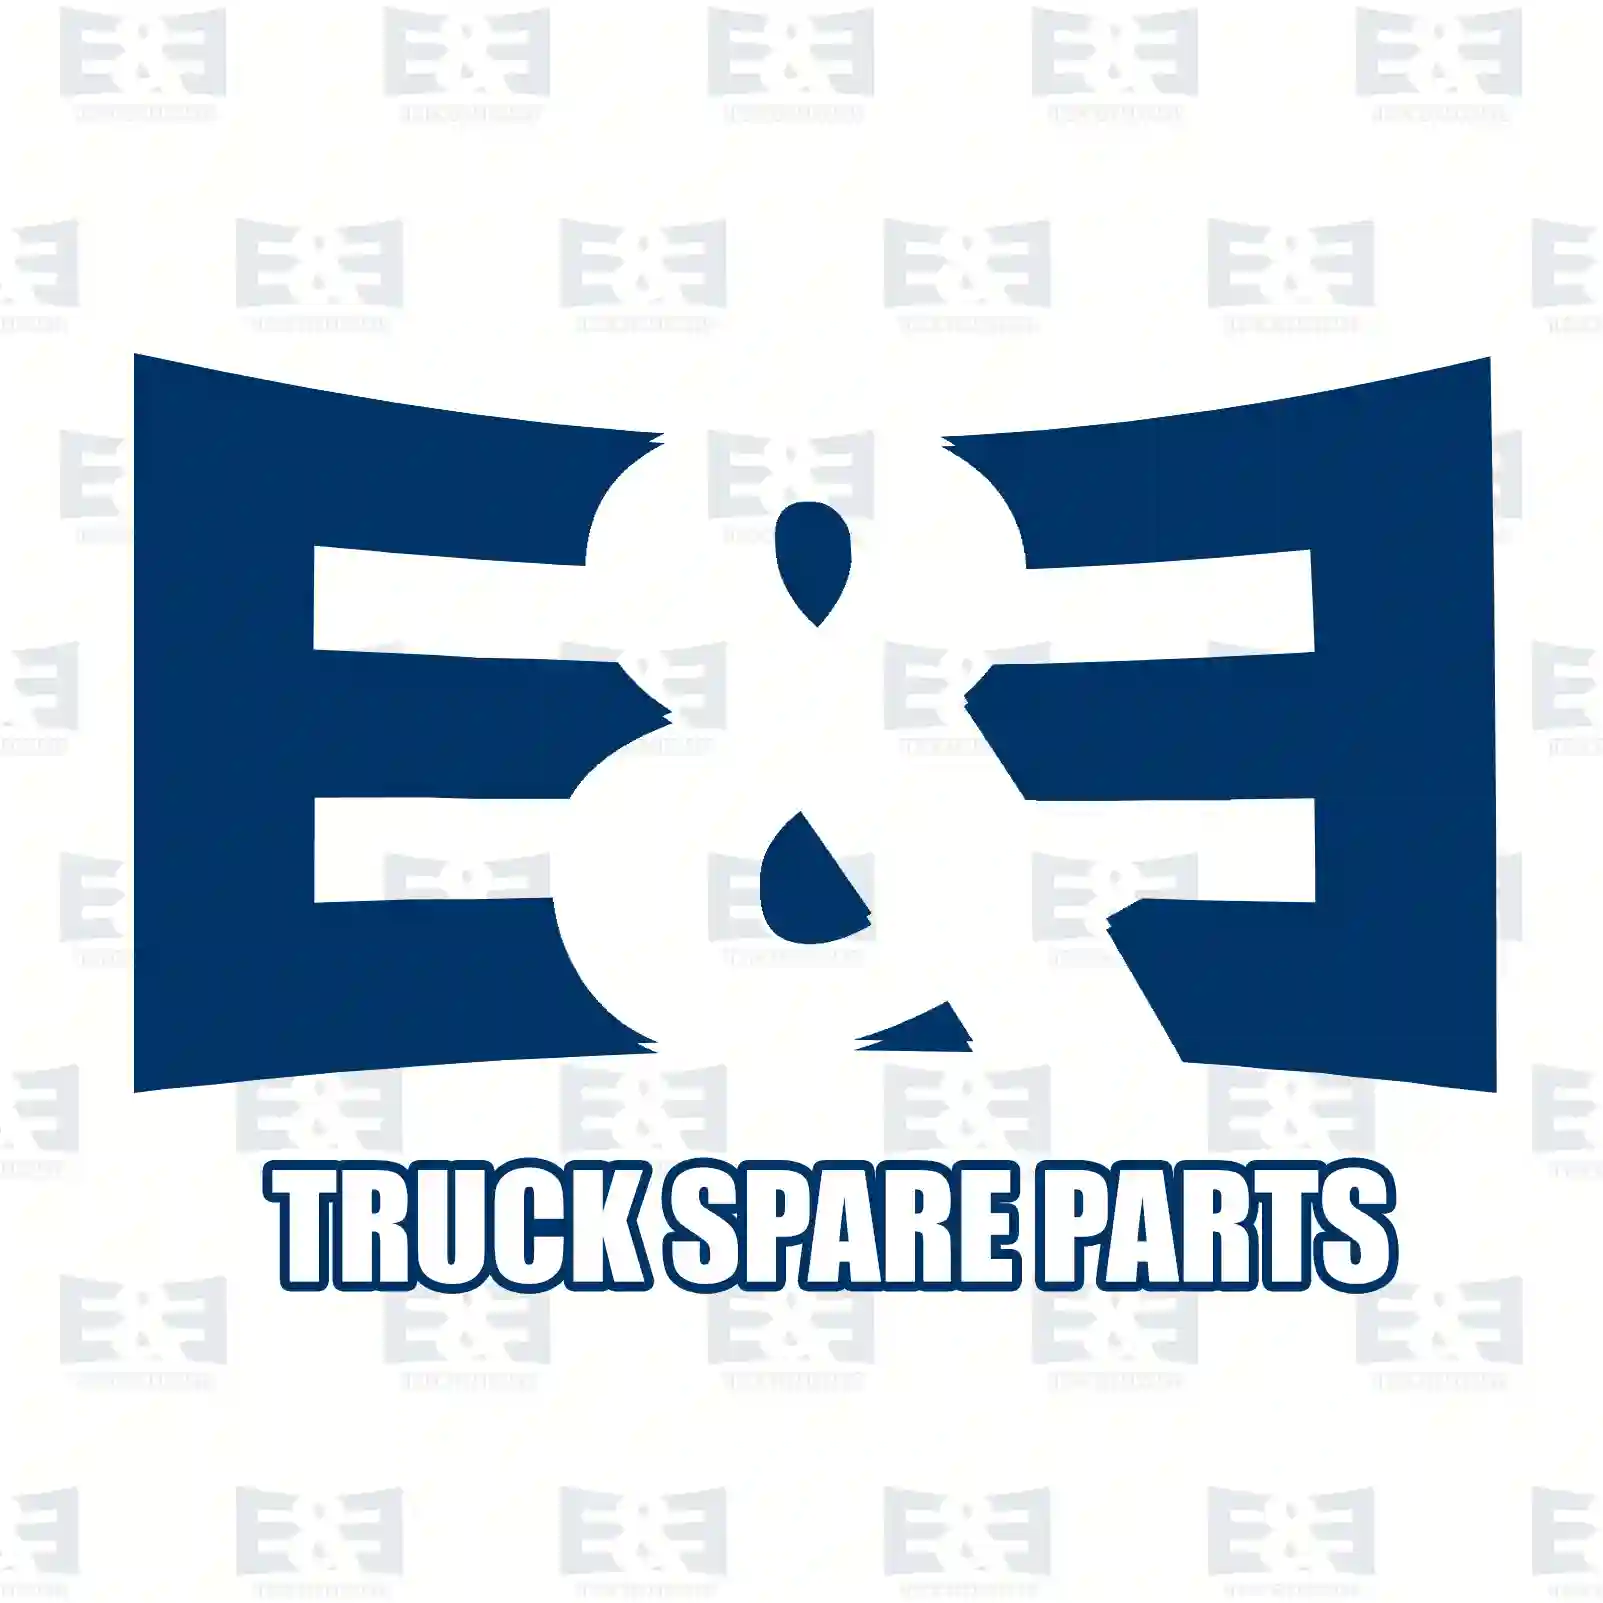 Oil cooler, gearbox, 2E2278881, 11033628, 111101 ||  2E2278881 E&E Truck Spare Parts | Truck Spare Parts, Auotomotive Spare Parts Oil cooler, gearbox, 2E2278881, 11033628, 111101 ||  2E2278881 E&E Truck Spare Parts | Truck Spare Parts, Auotomotive Spare Parts